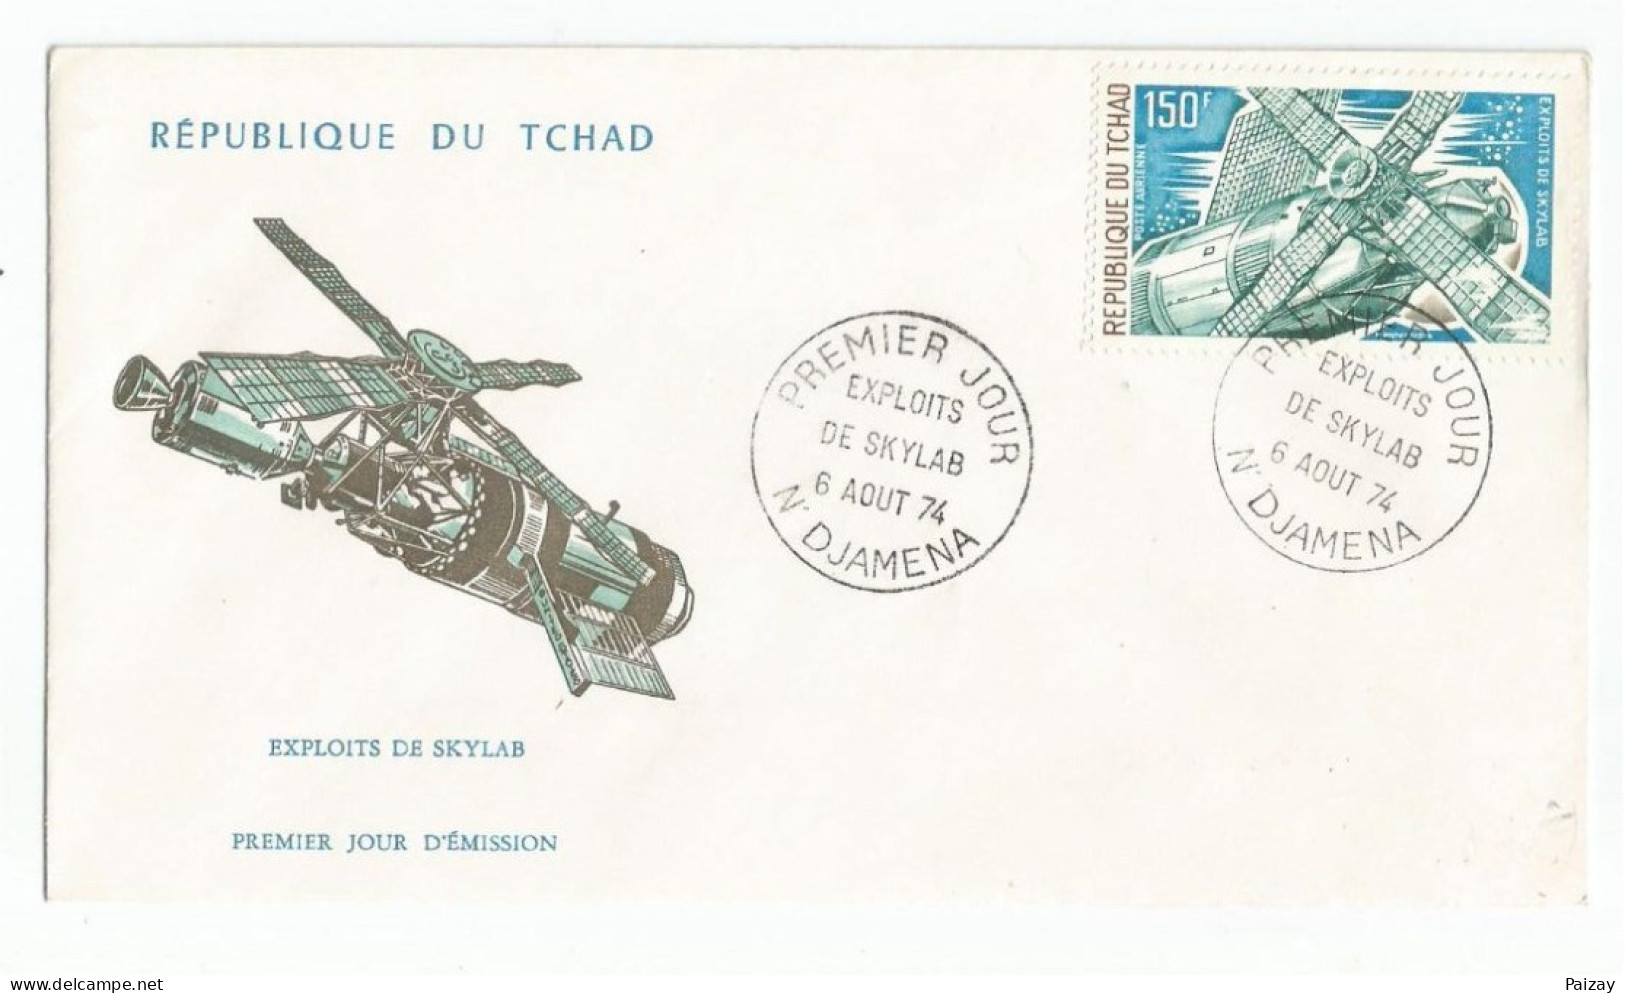 FDC République Tchad 6 Aout 1974 Poste Aérienne Exploits De Skylab Cachet N Djamena Afrique N° 146 Et 147 - Tchad (1960-...)